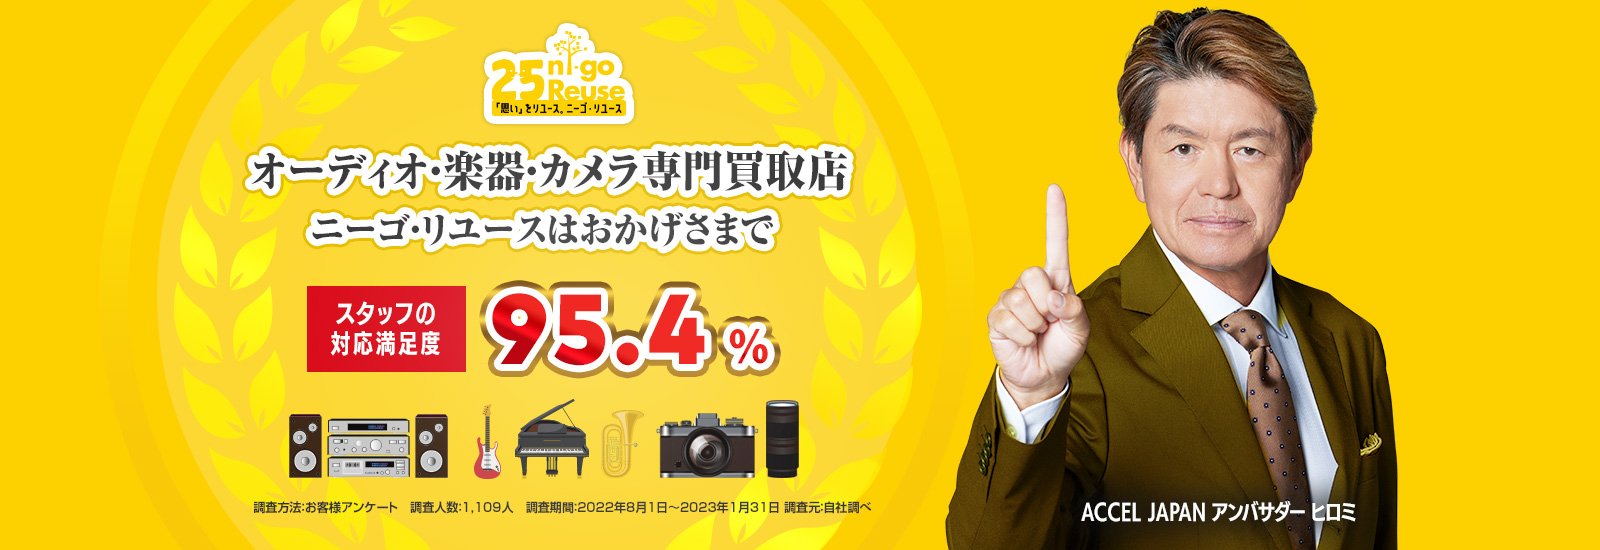 25Reuseはおかげさまで「オーディオ・楽器・カメラ買取専門店」買取価格・スタッフ対応満足度第一位に選ばれました。ACCEL JAPAN アンバサダー ヒロミ